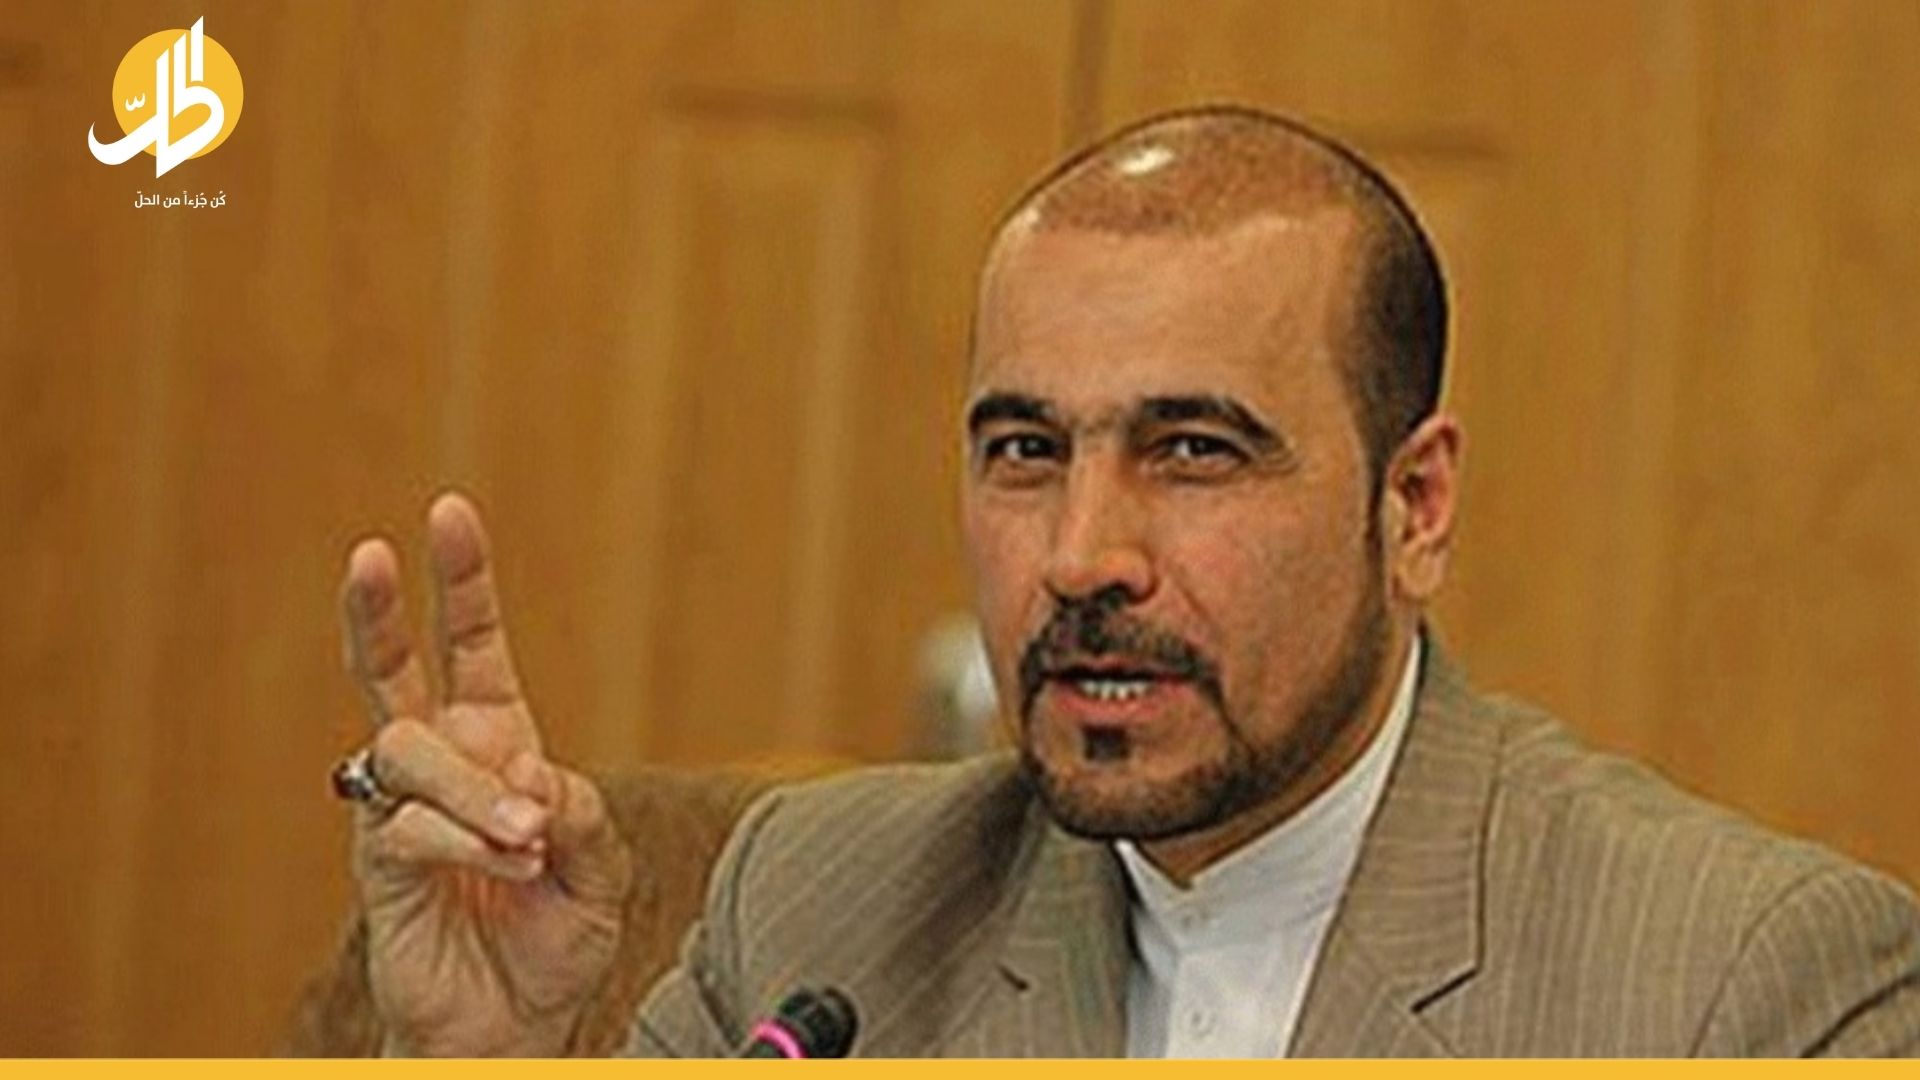 العراق يحجب ظهور دبلوماسي إيراني على وسائله الإعلامية